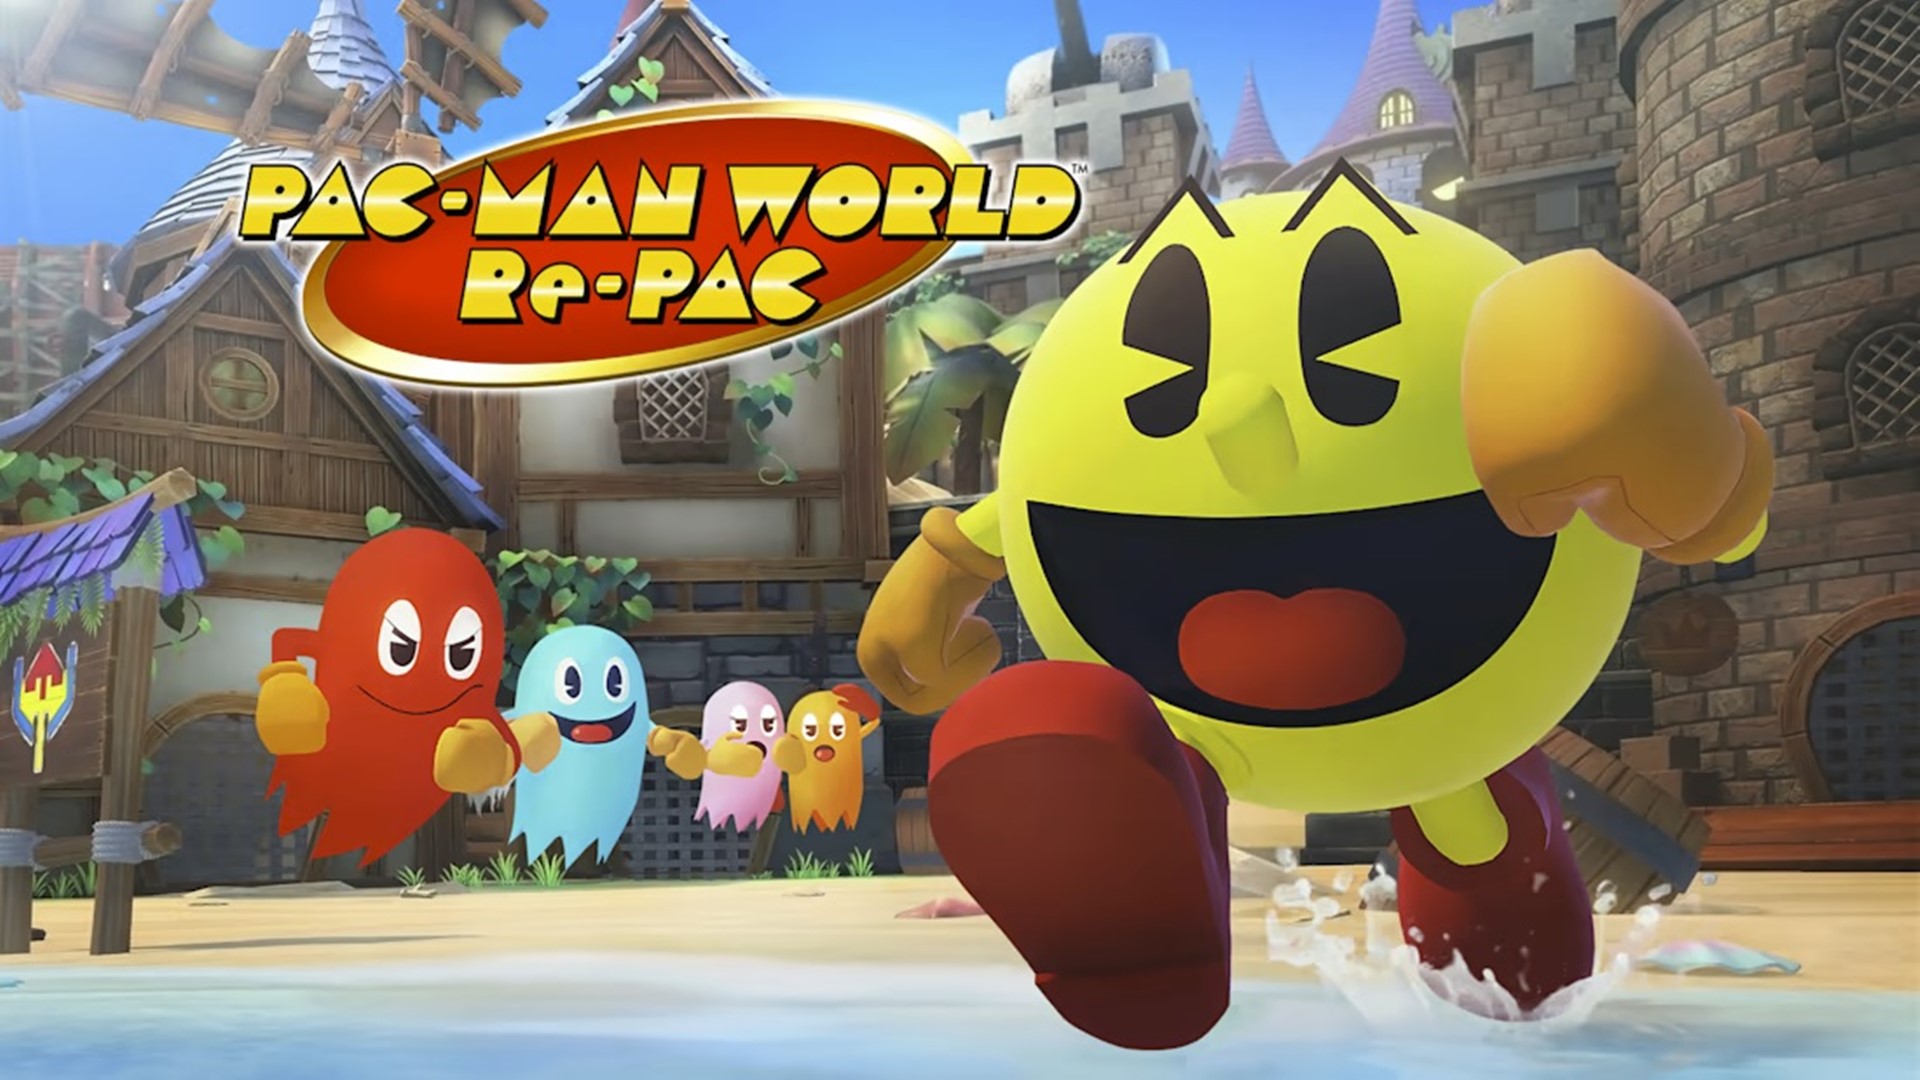 เกม Pac-Man World Re-Pac บน Switch จะมีเฟรมเรตด้อยกว่าเครื่องอื่น